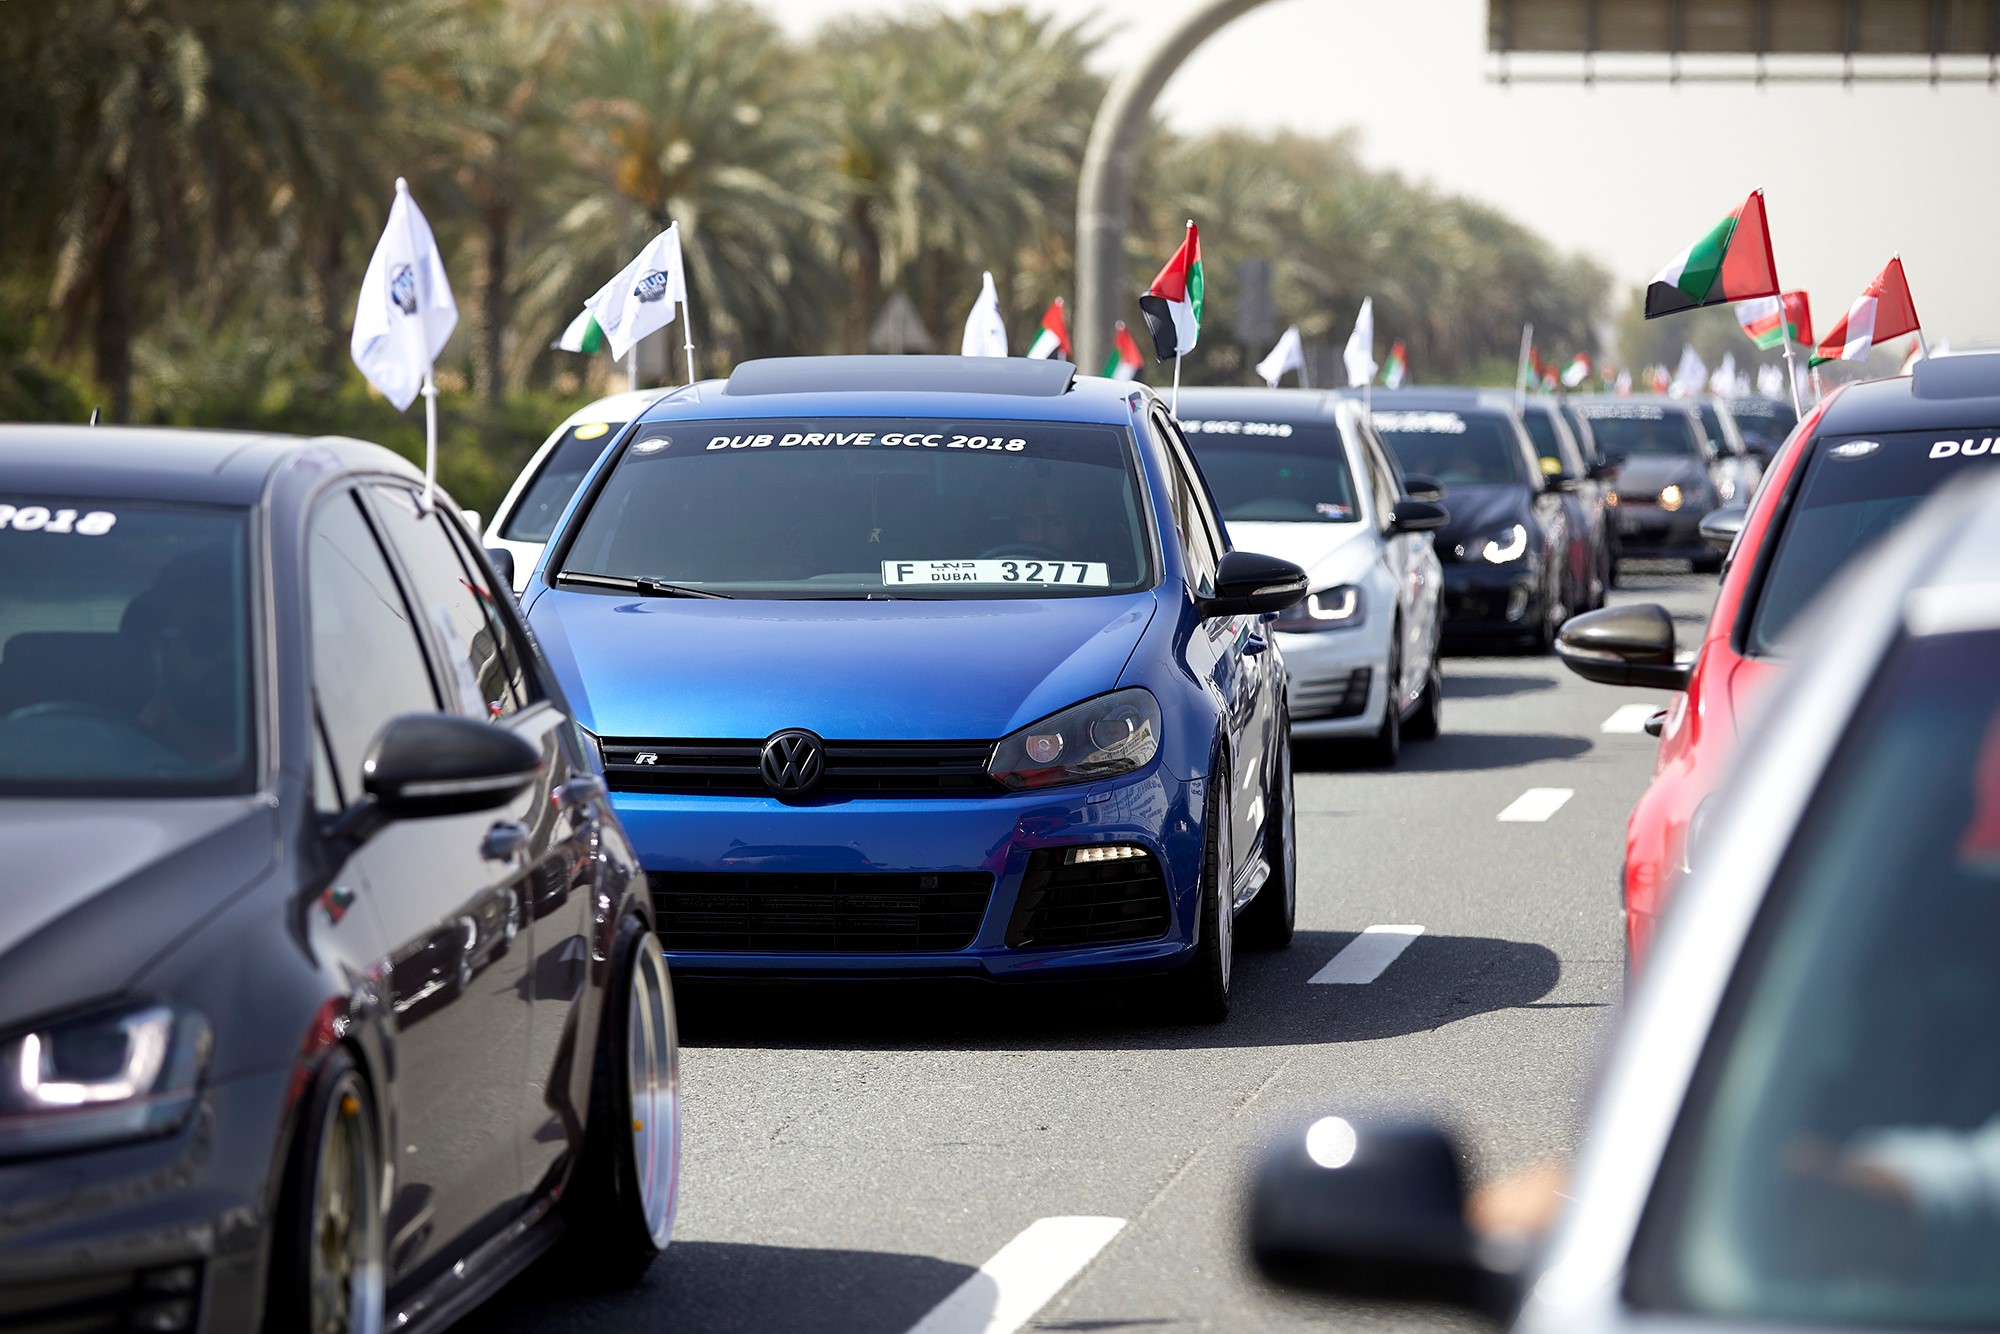 Volkswagen Parade In Dubai. - The Filipino Times3264 x 2448